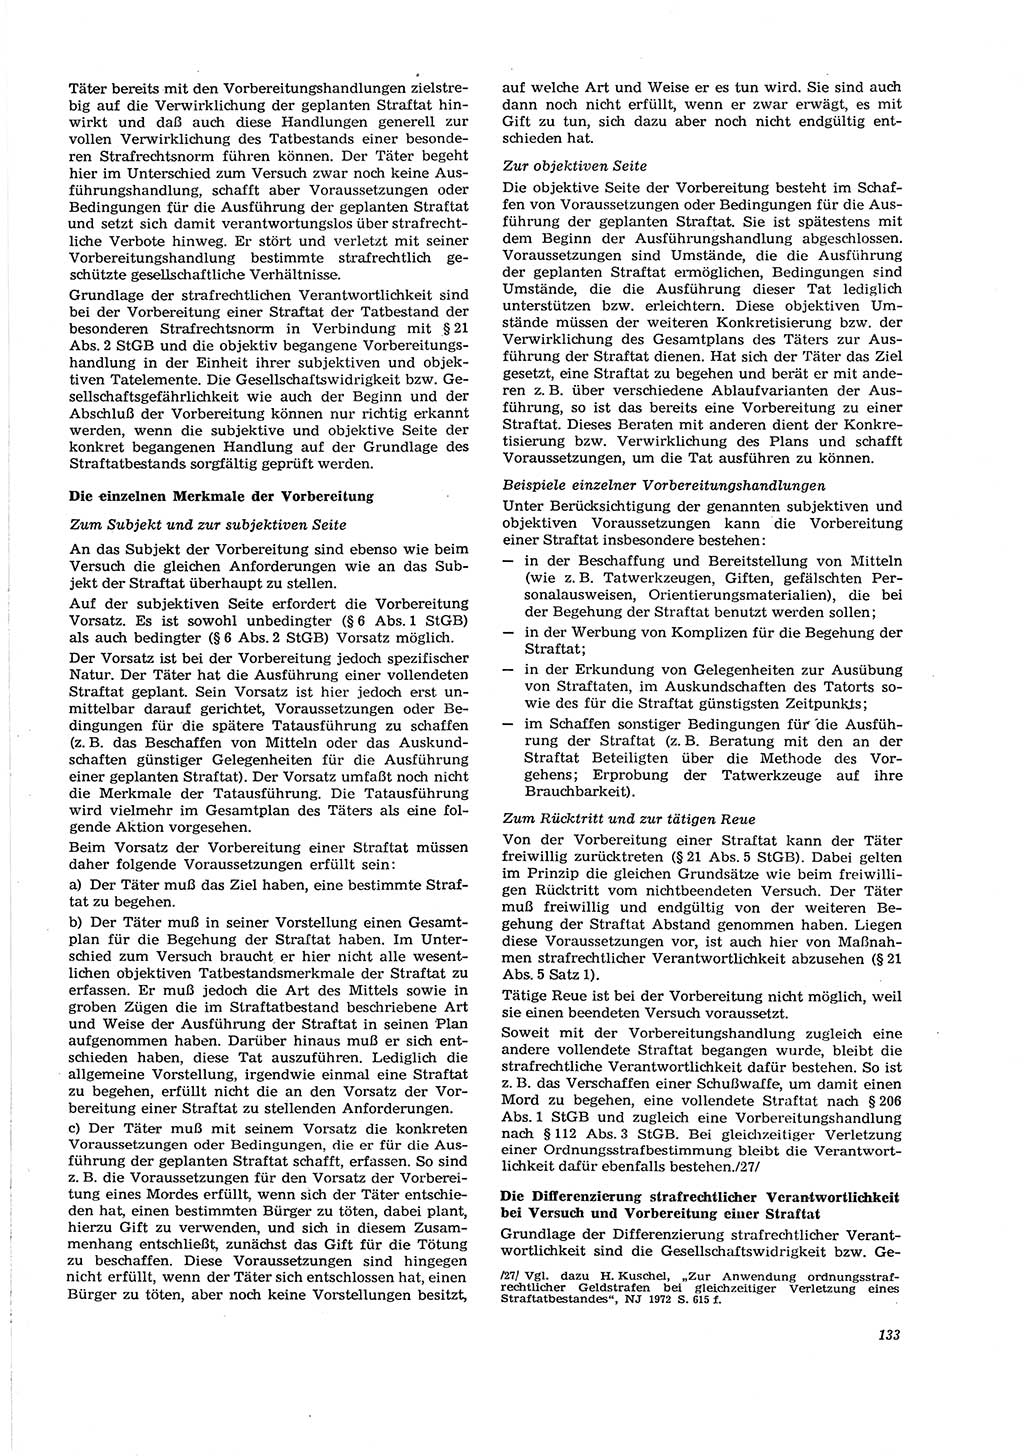 Neue Justiz (NJ), Zeitschrift für Recht und Rechtswissenschaft [Deutsche Demokratische Republik (DDR)], 29. Jahrgang 1975, Seite 133 (NJ DDR 1975, S. 133)